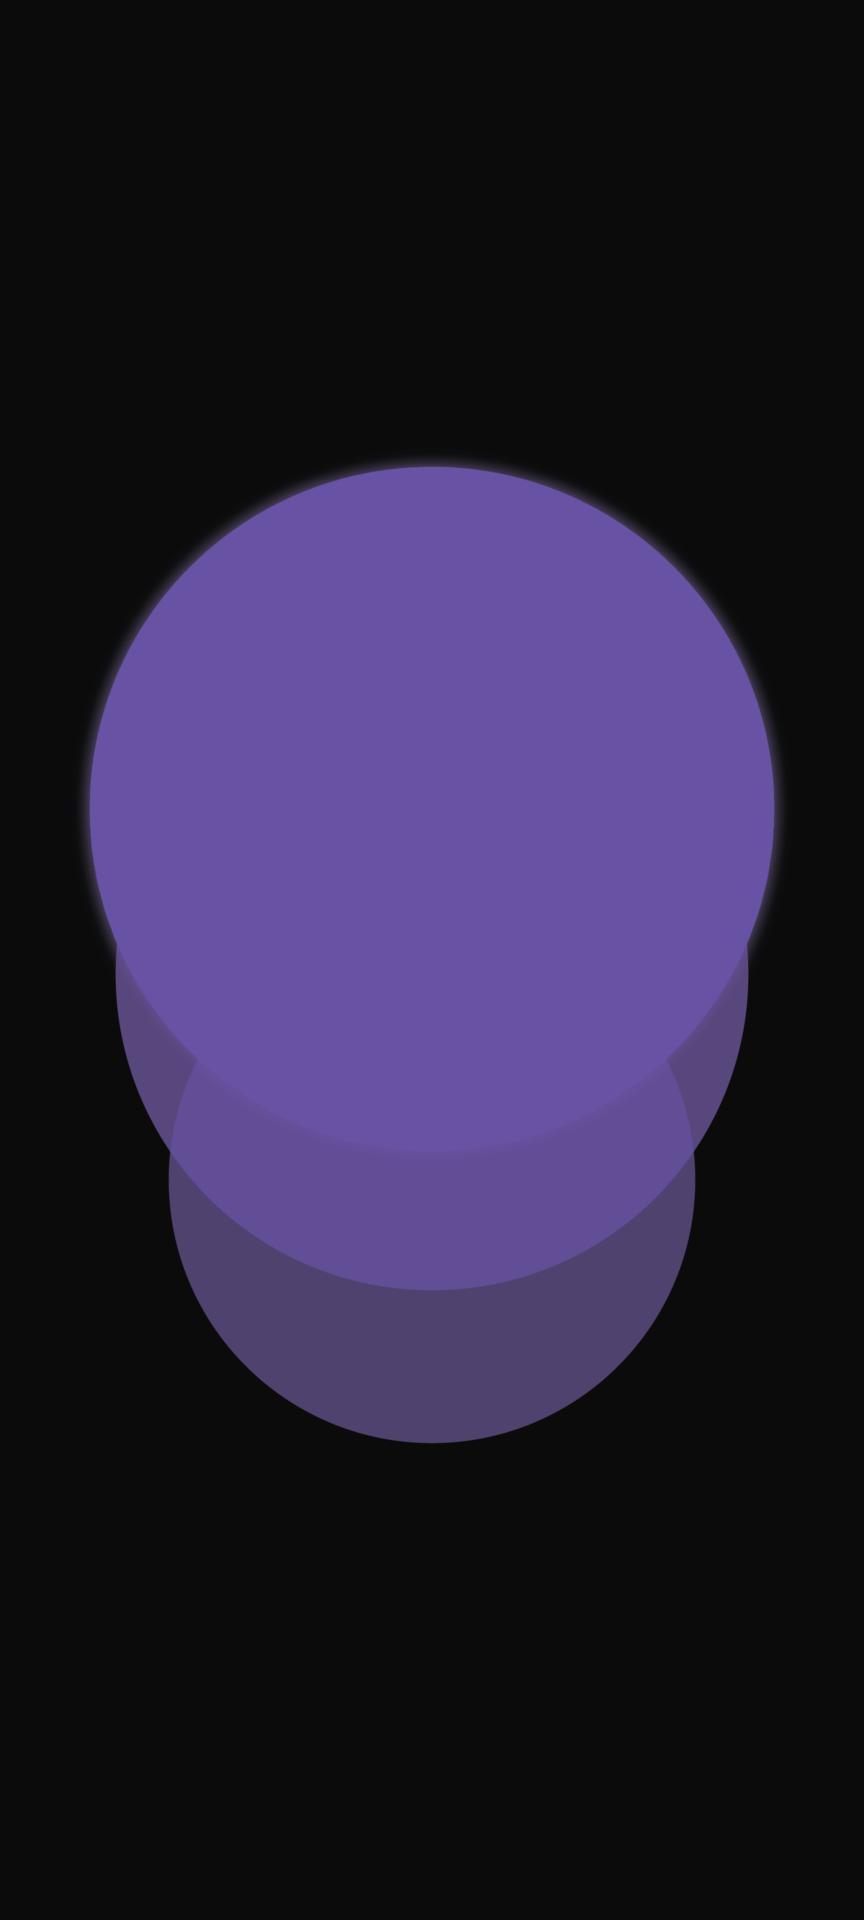 circles purple